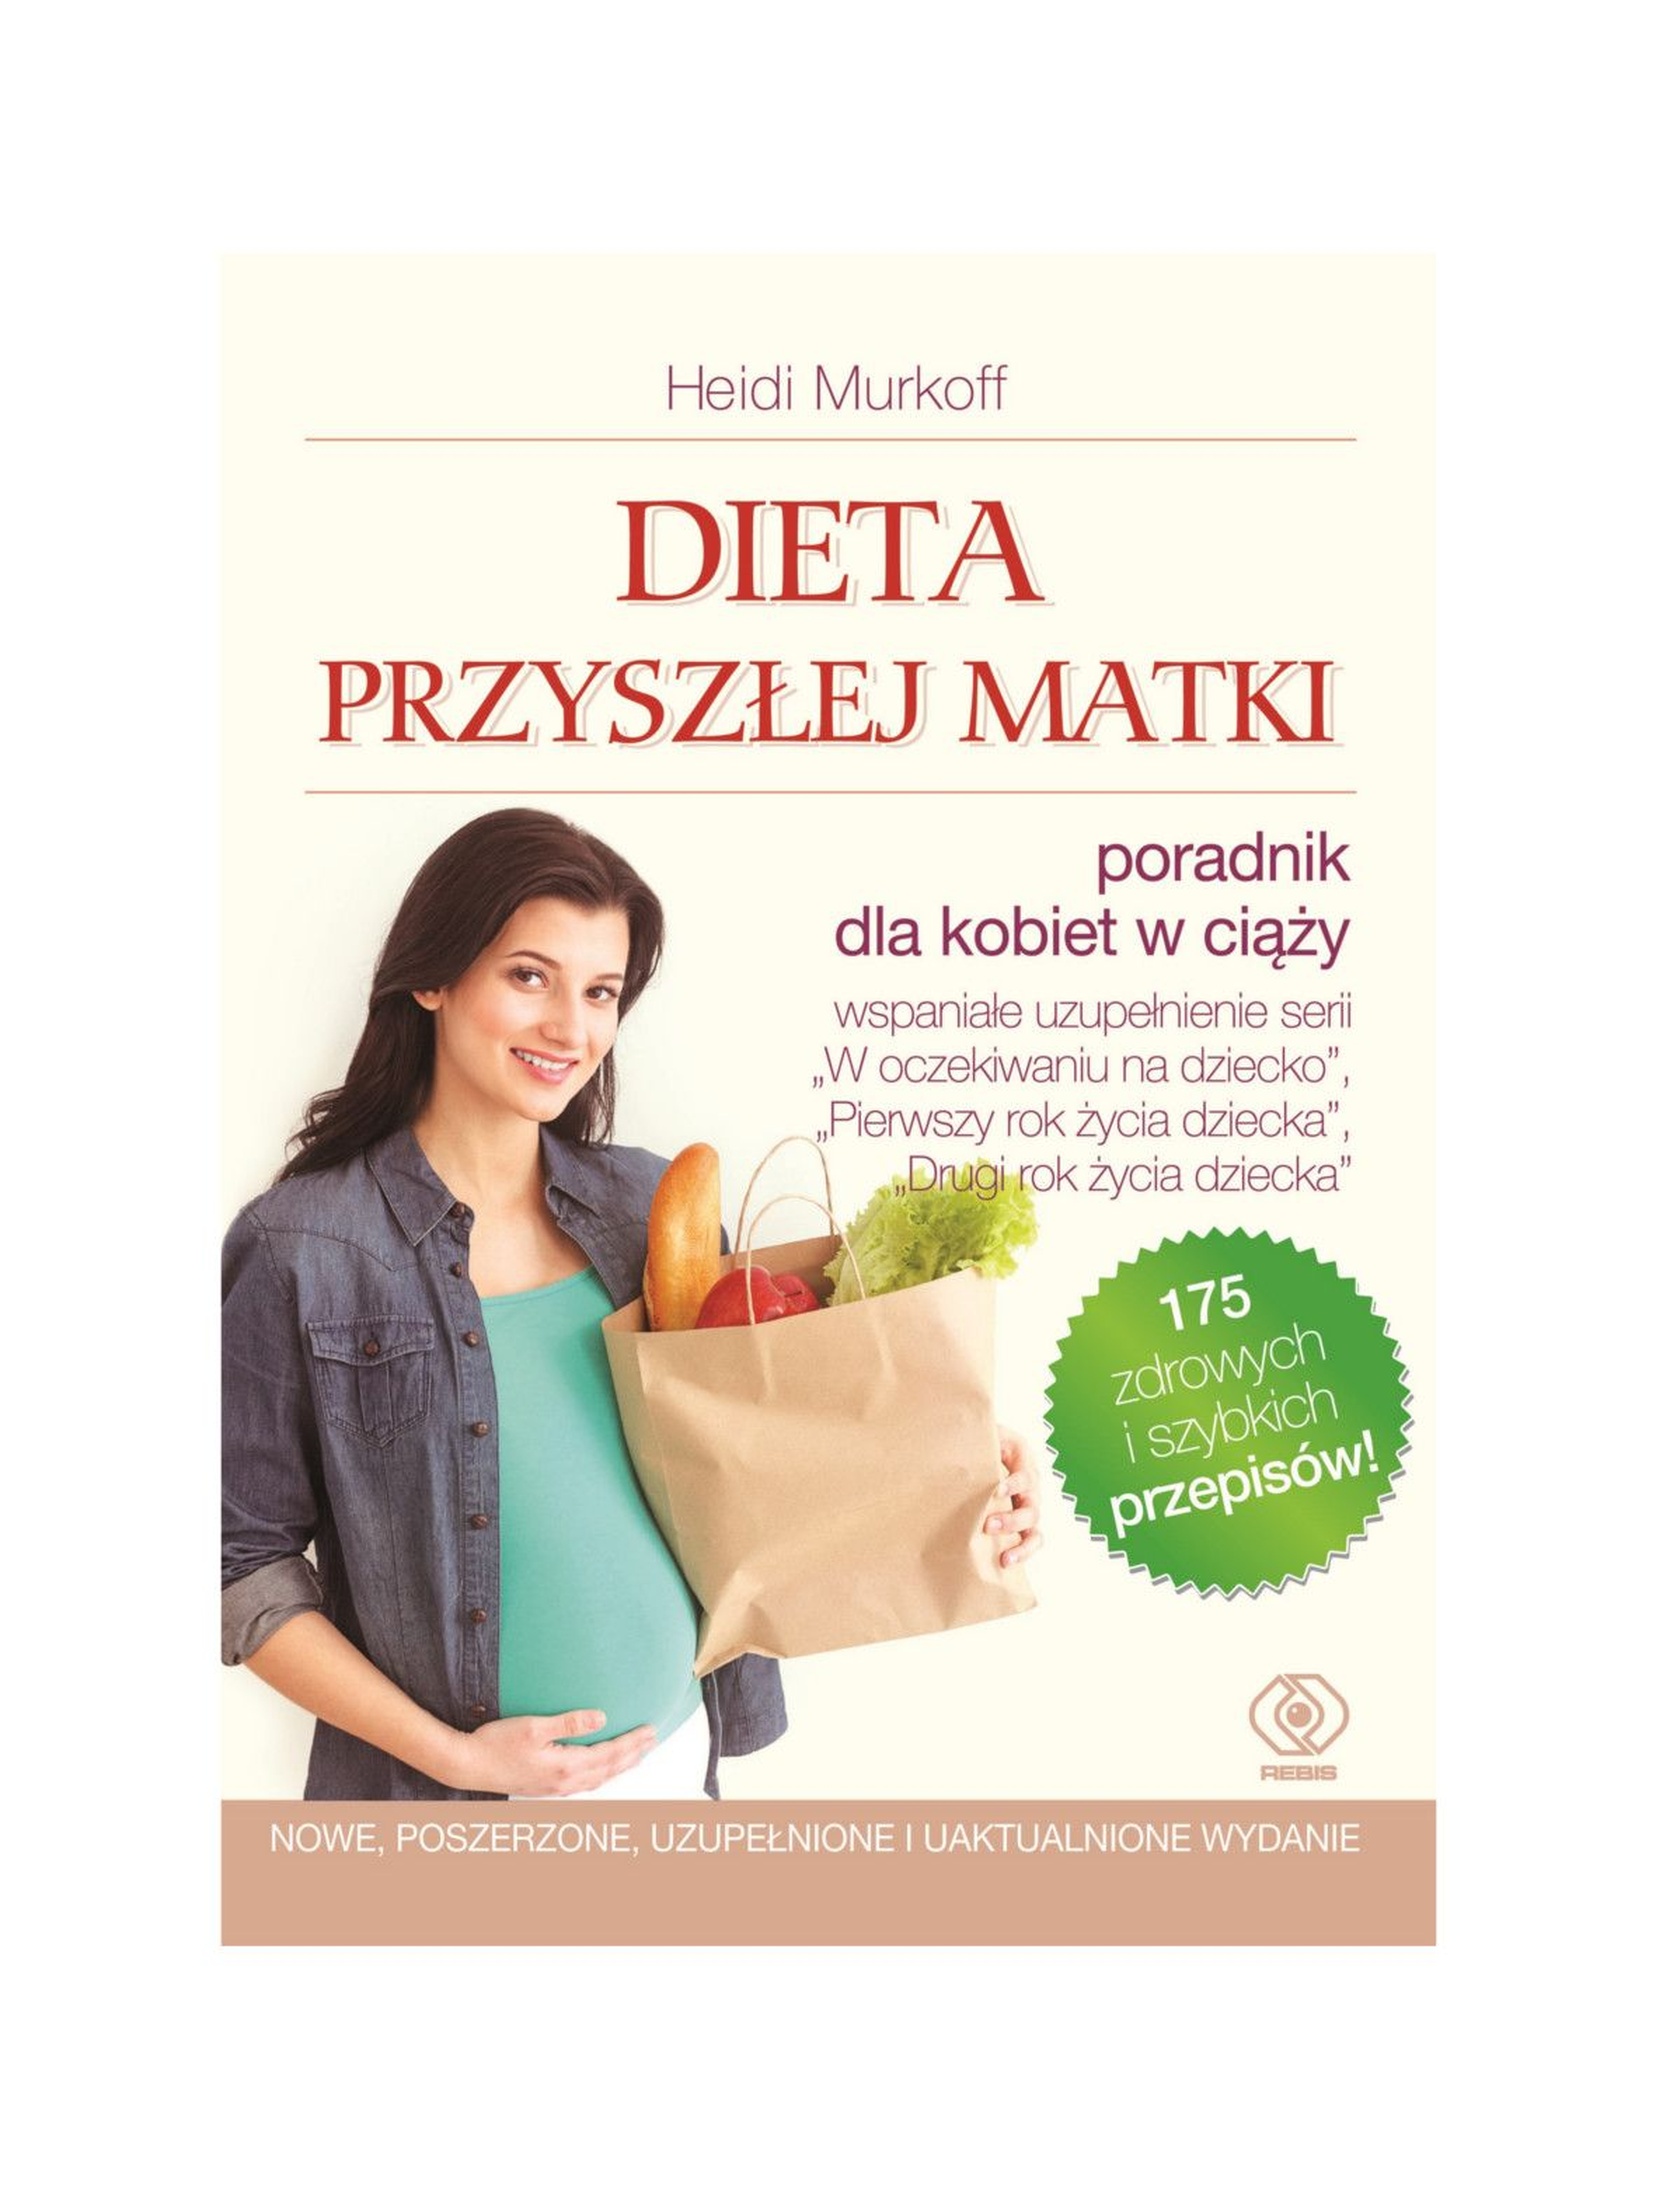 Książka z przepisami "Dieta przyszłej matki"-poradnik